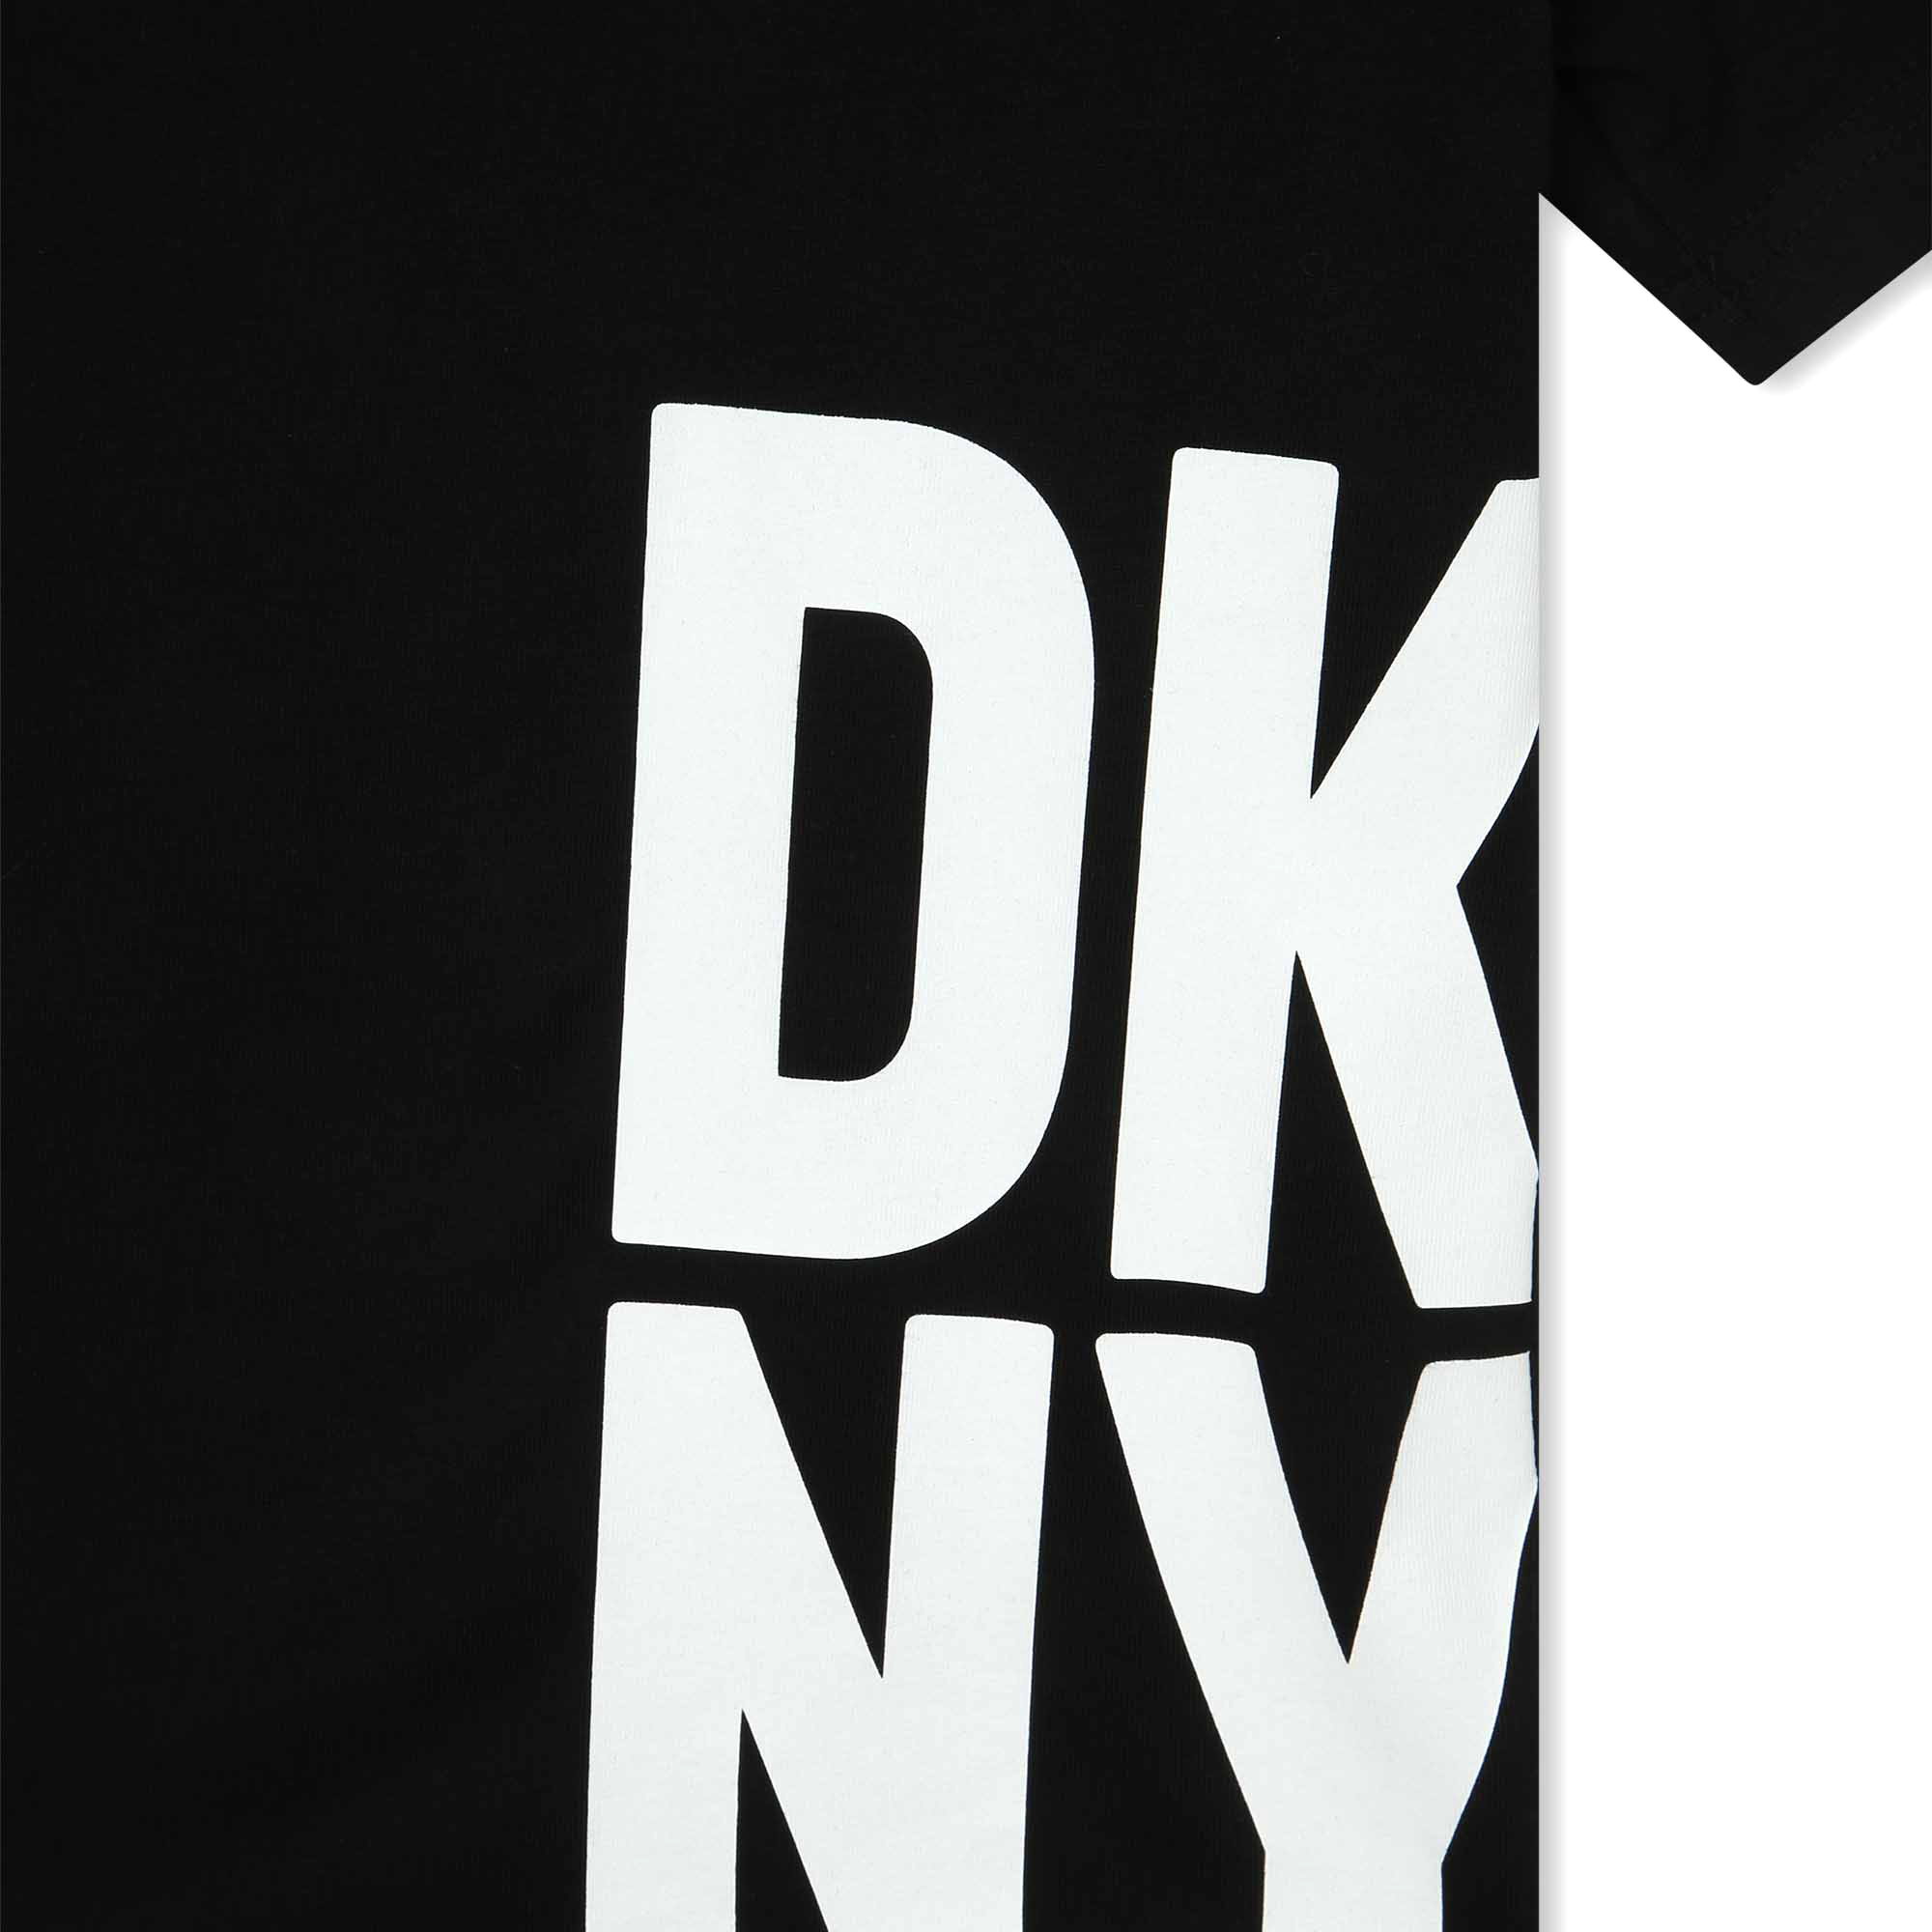 Short-sleeved T-shirt DKNY for UNISEX